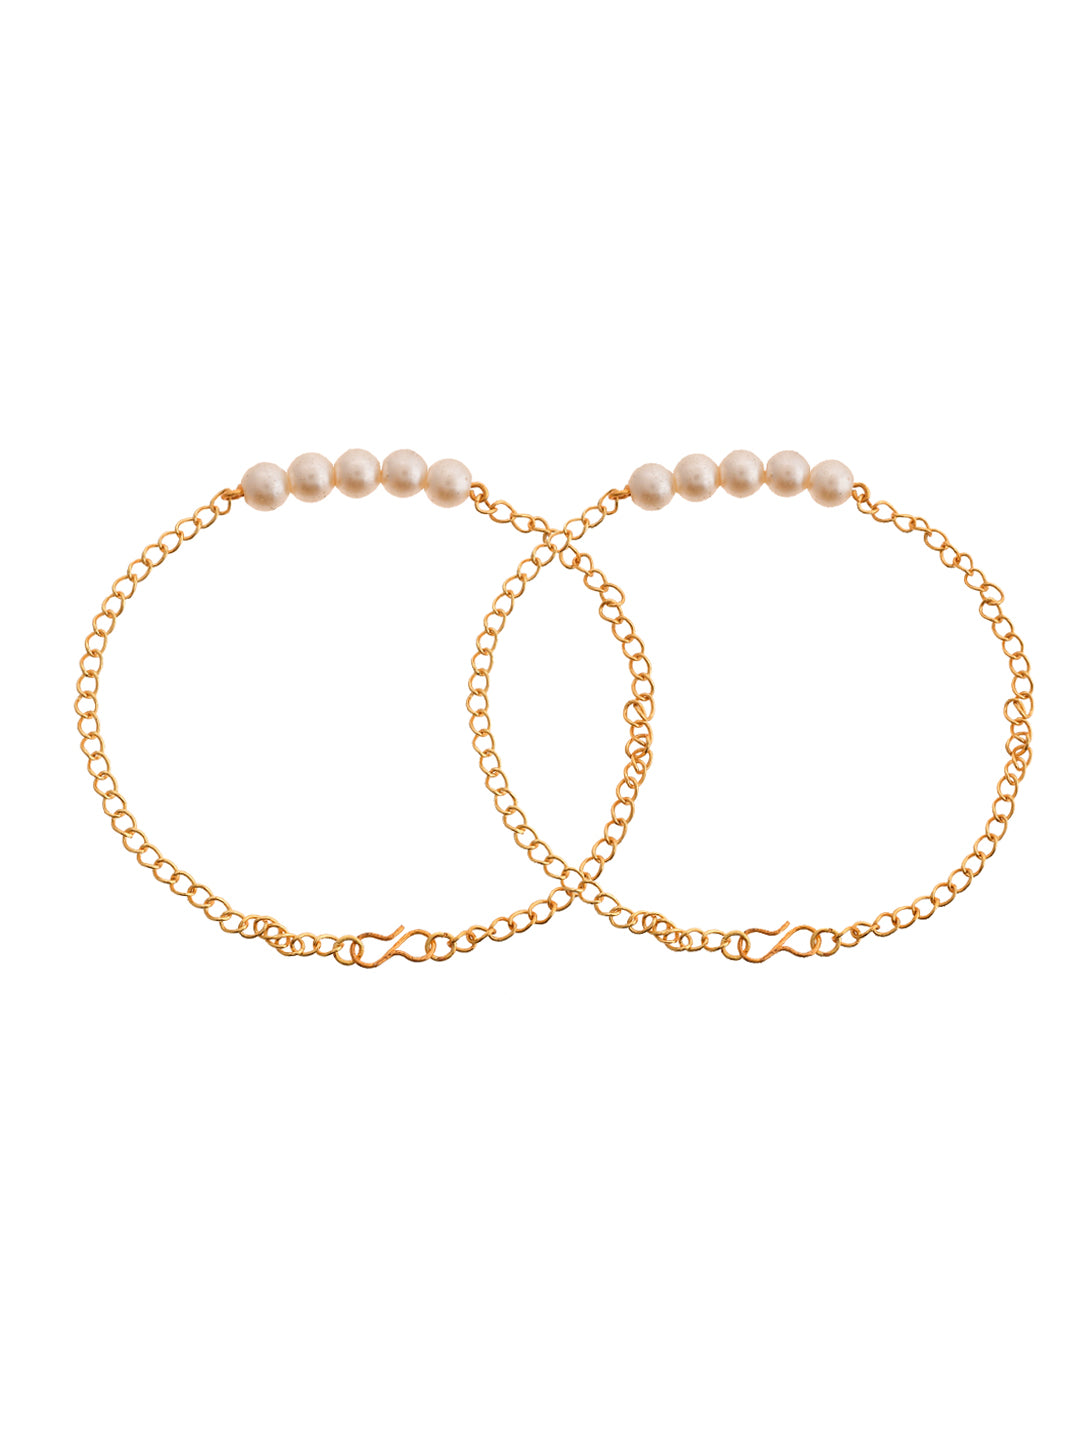 Golden Pearl Anklet for women